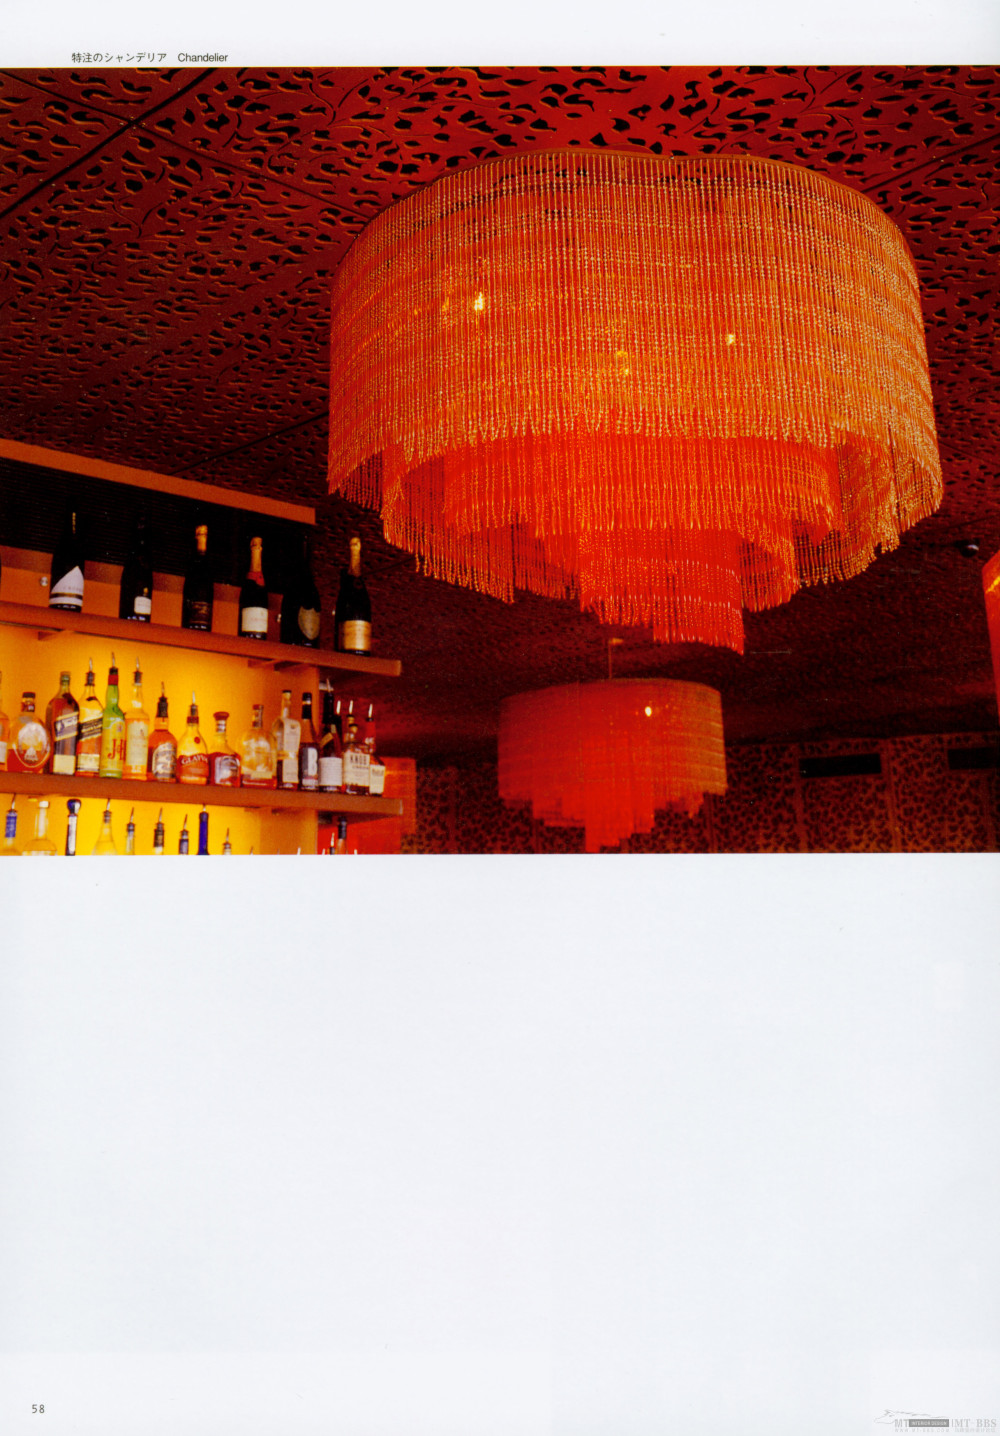 世界酒吧与餐厅(超大图)_058.jpg